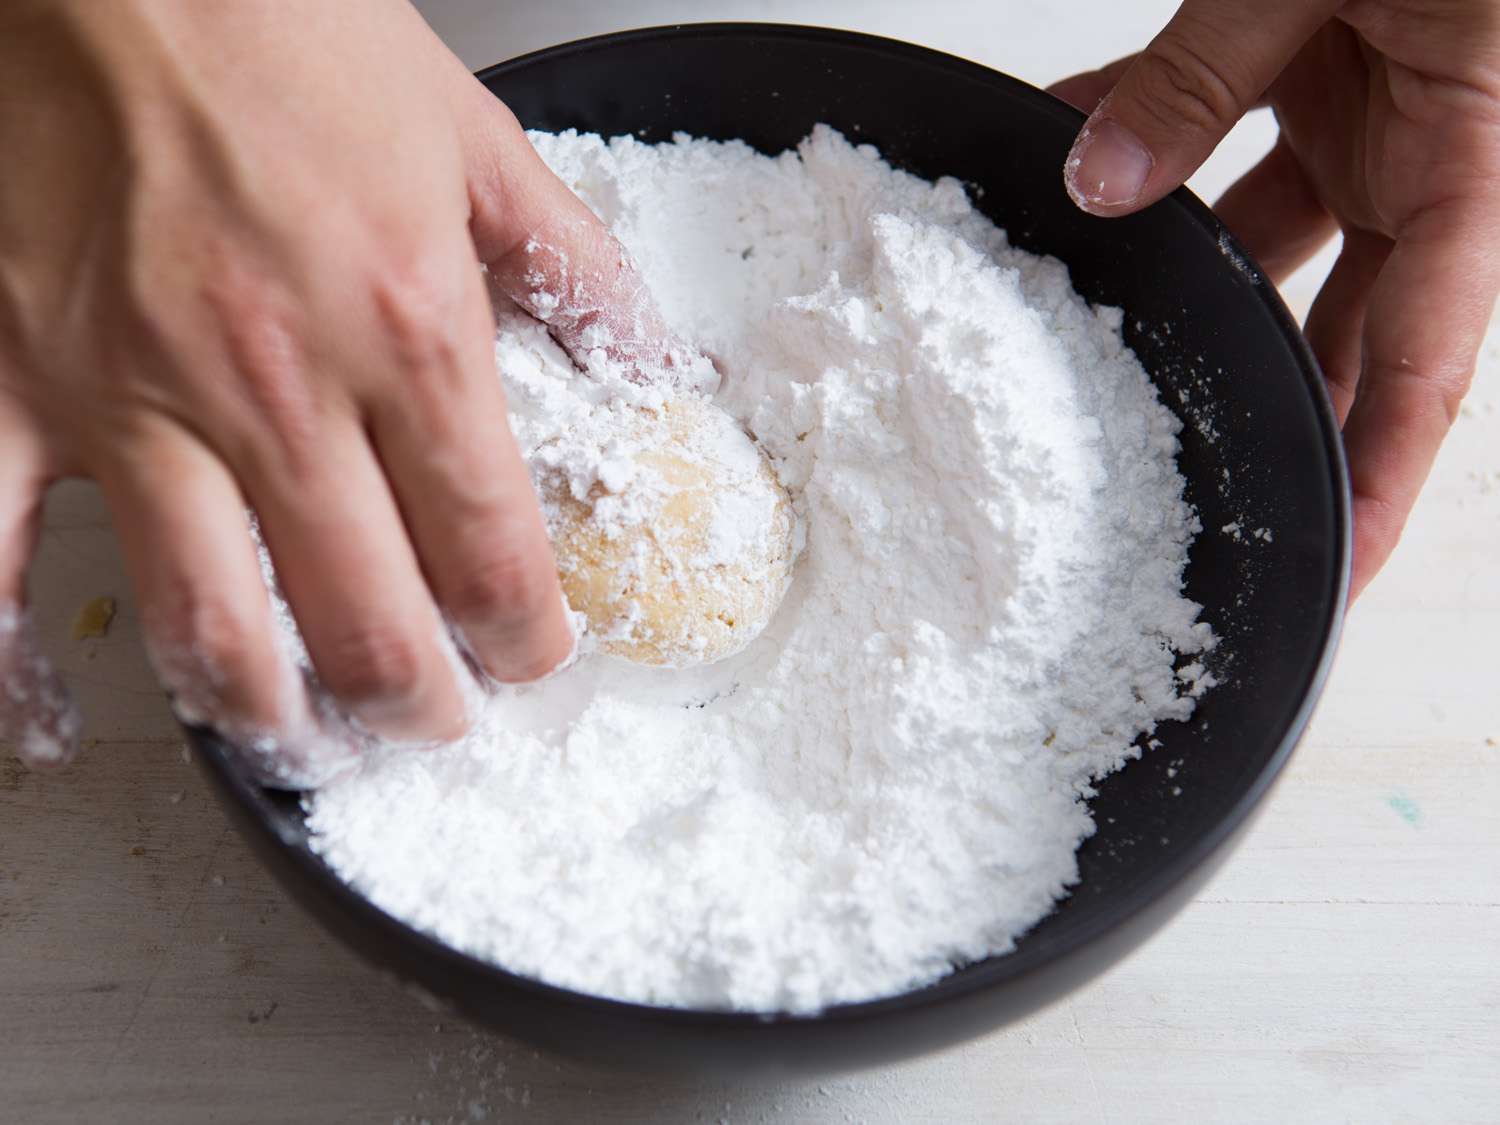 把烤好的雪球饼干放在一小碗糖粉里滚动